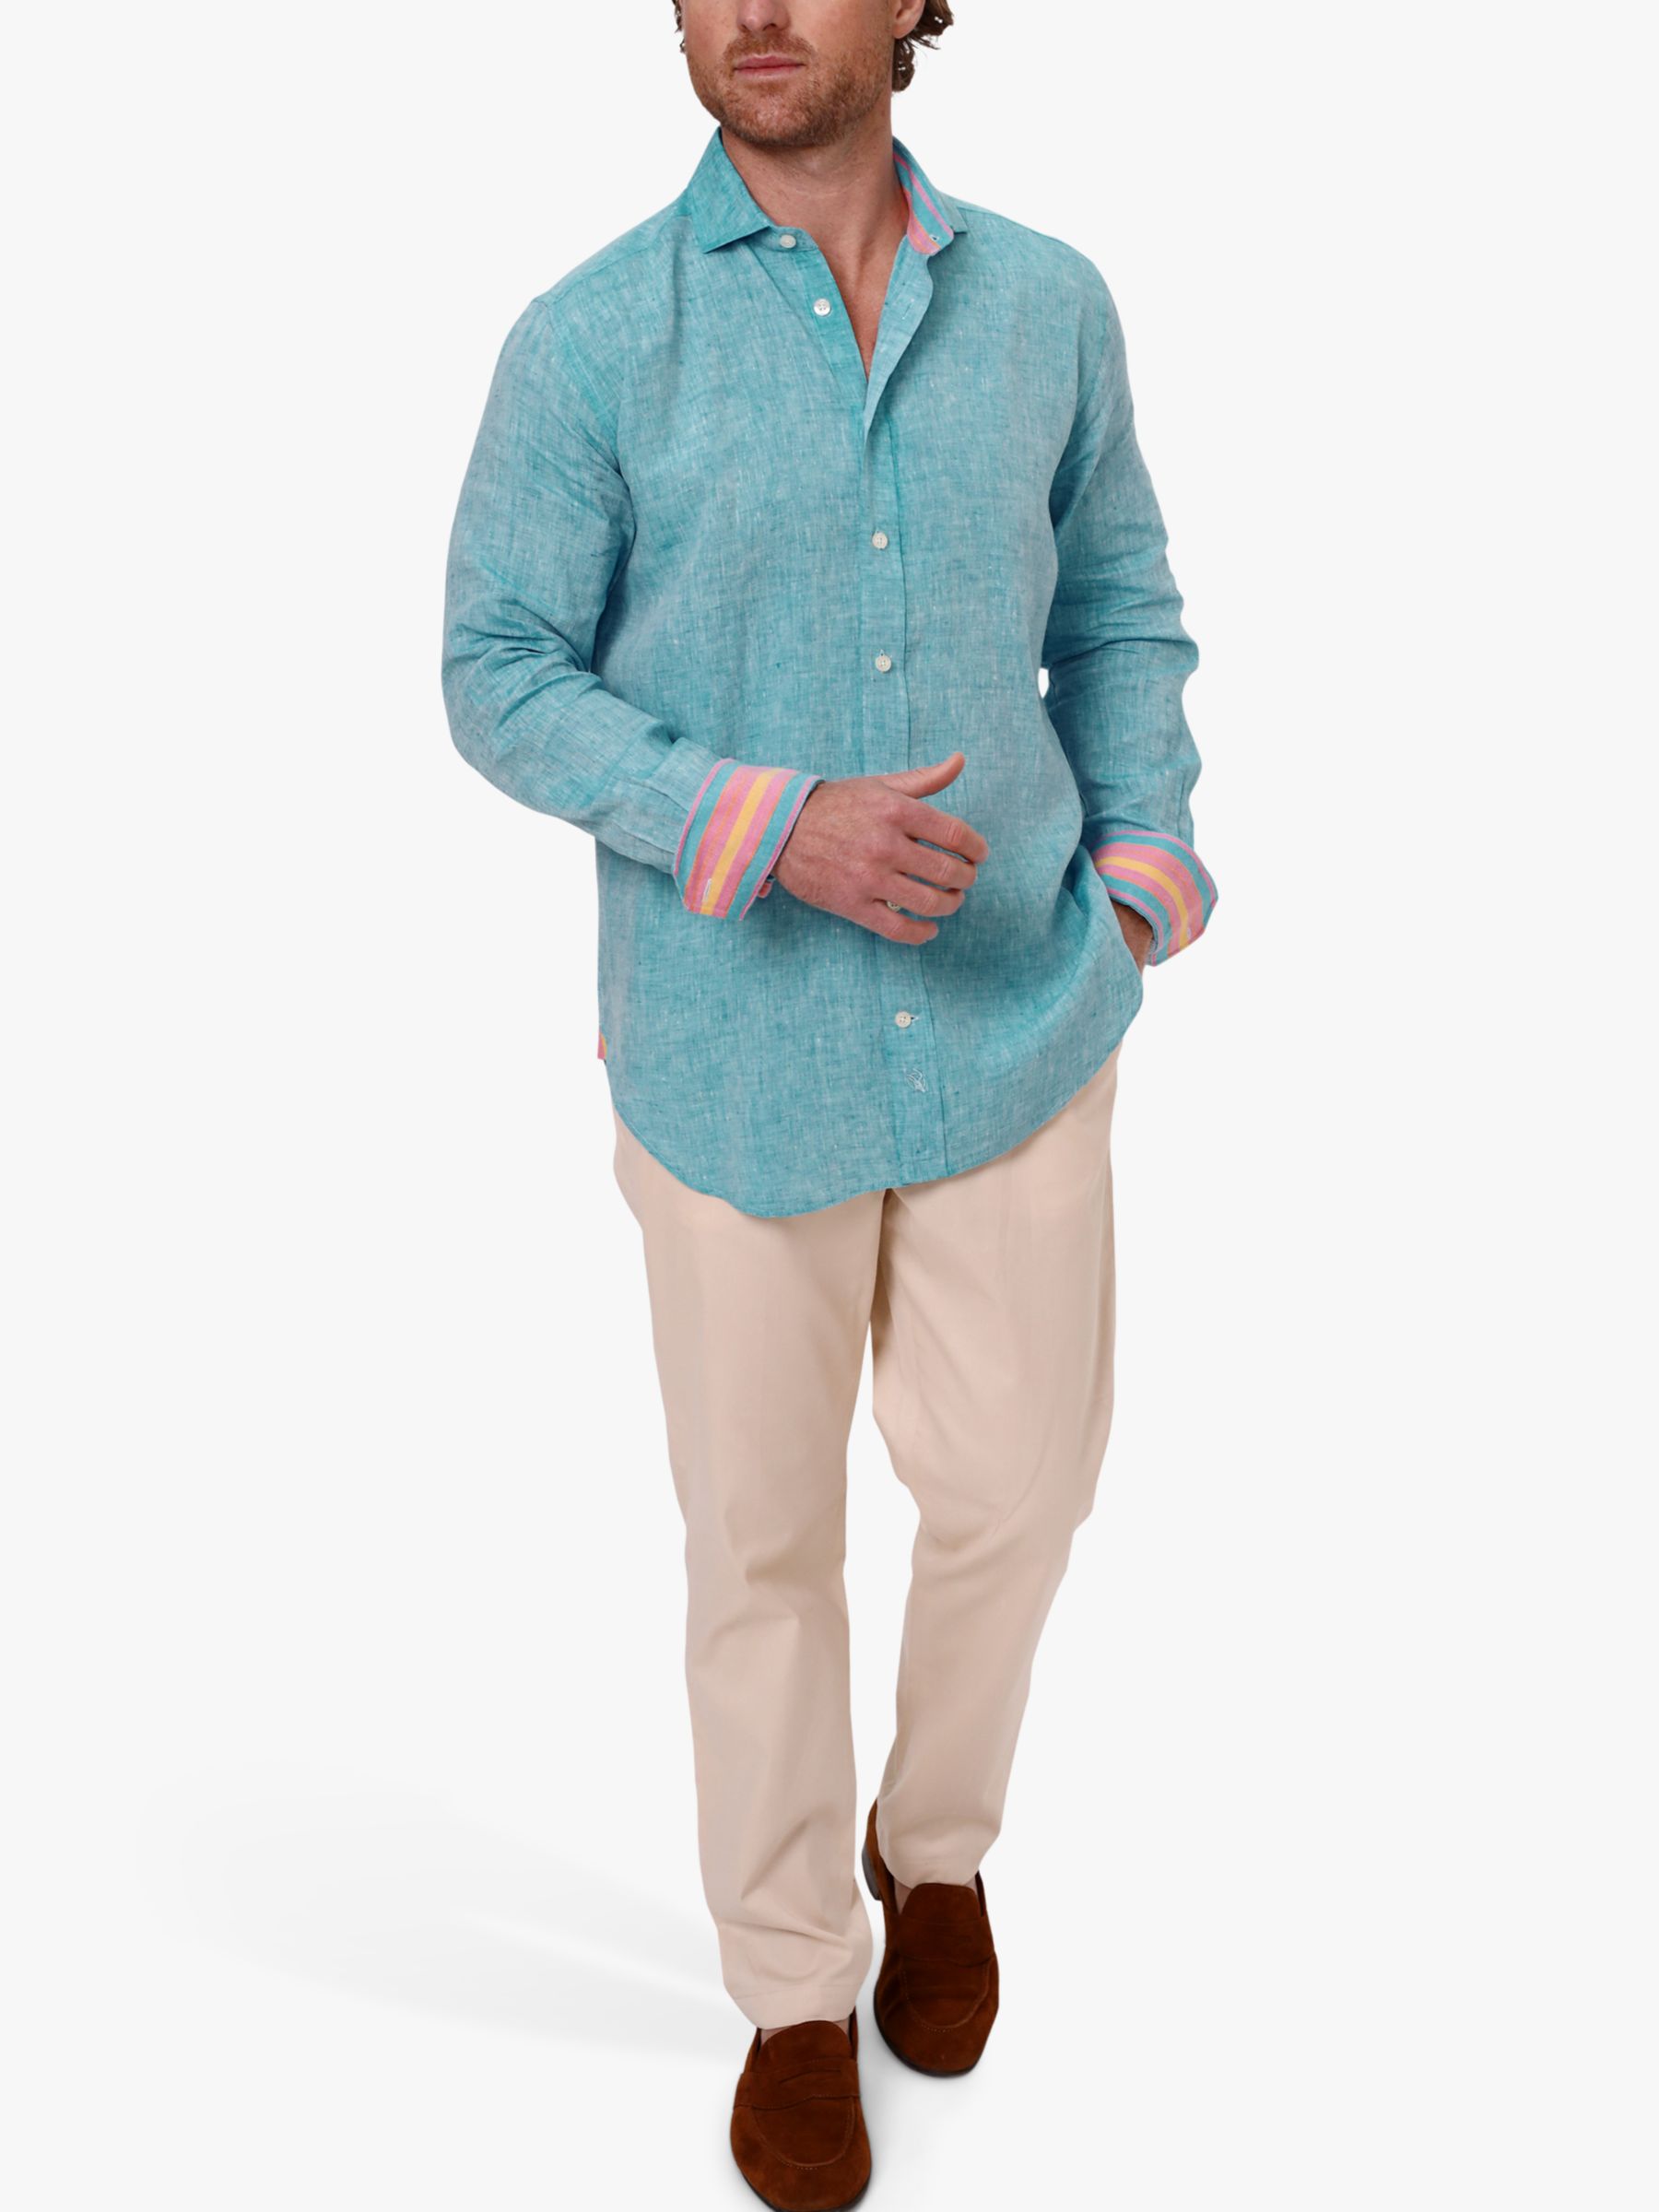 KOY Nyota Linen Shirt, Turquoise, S